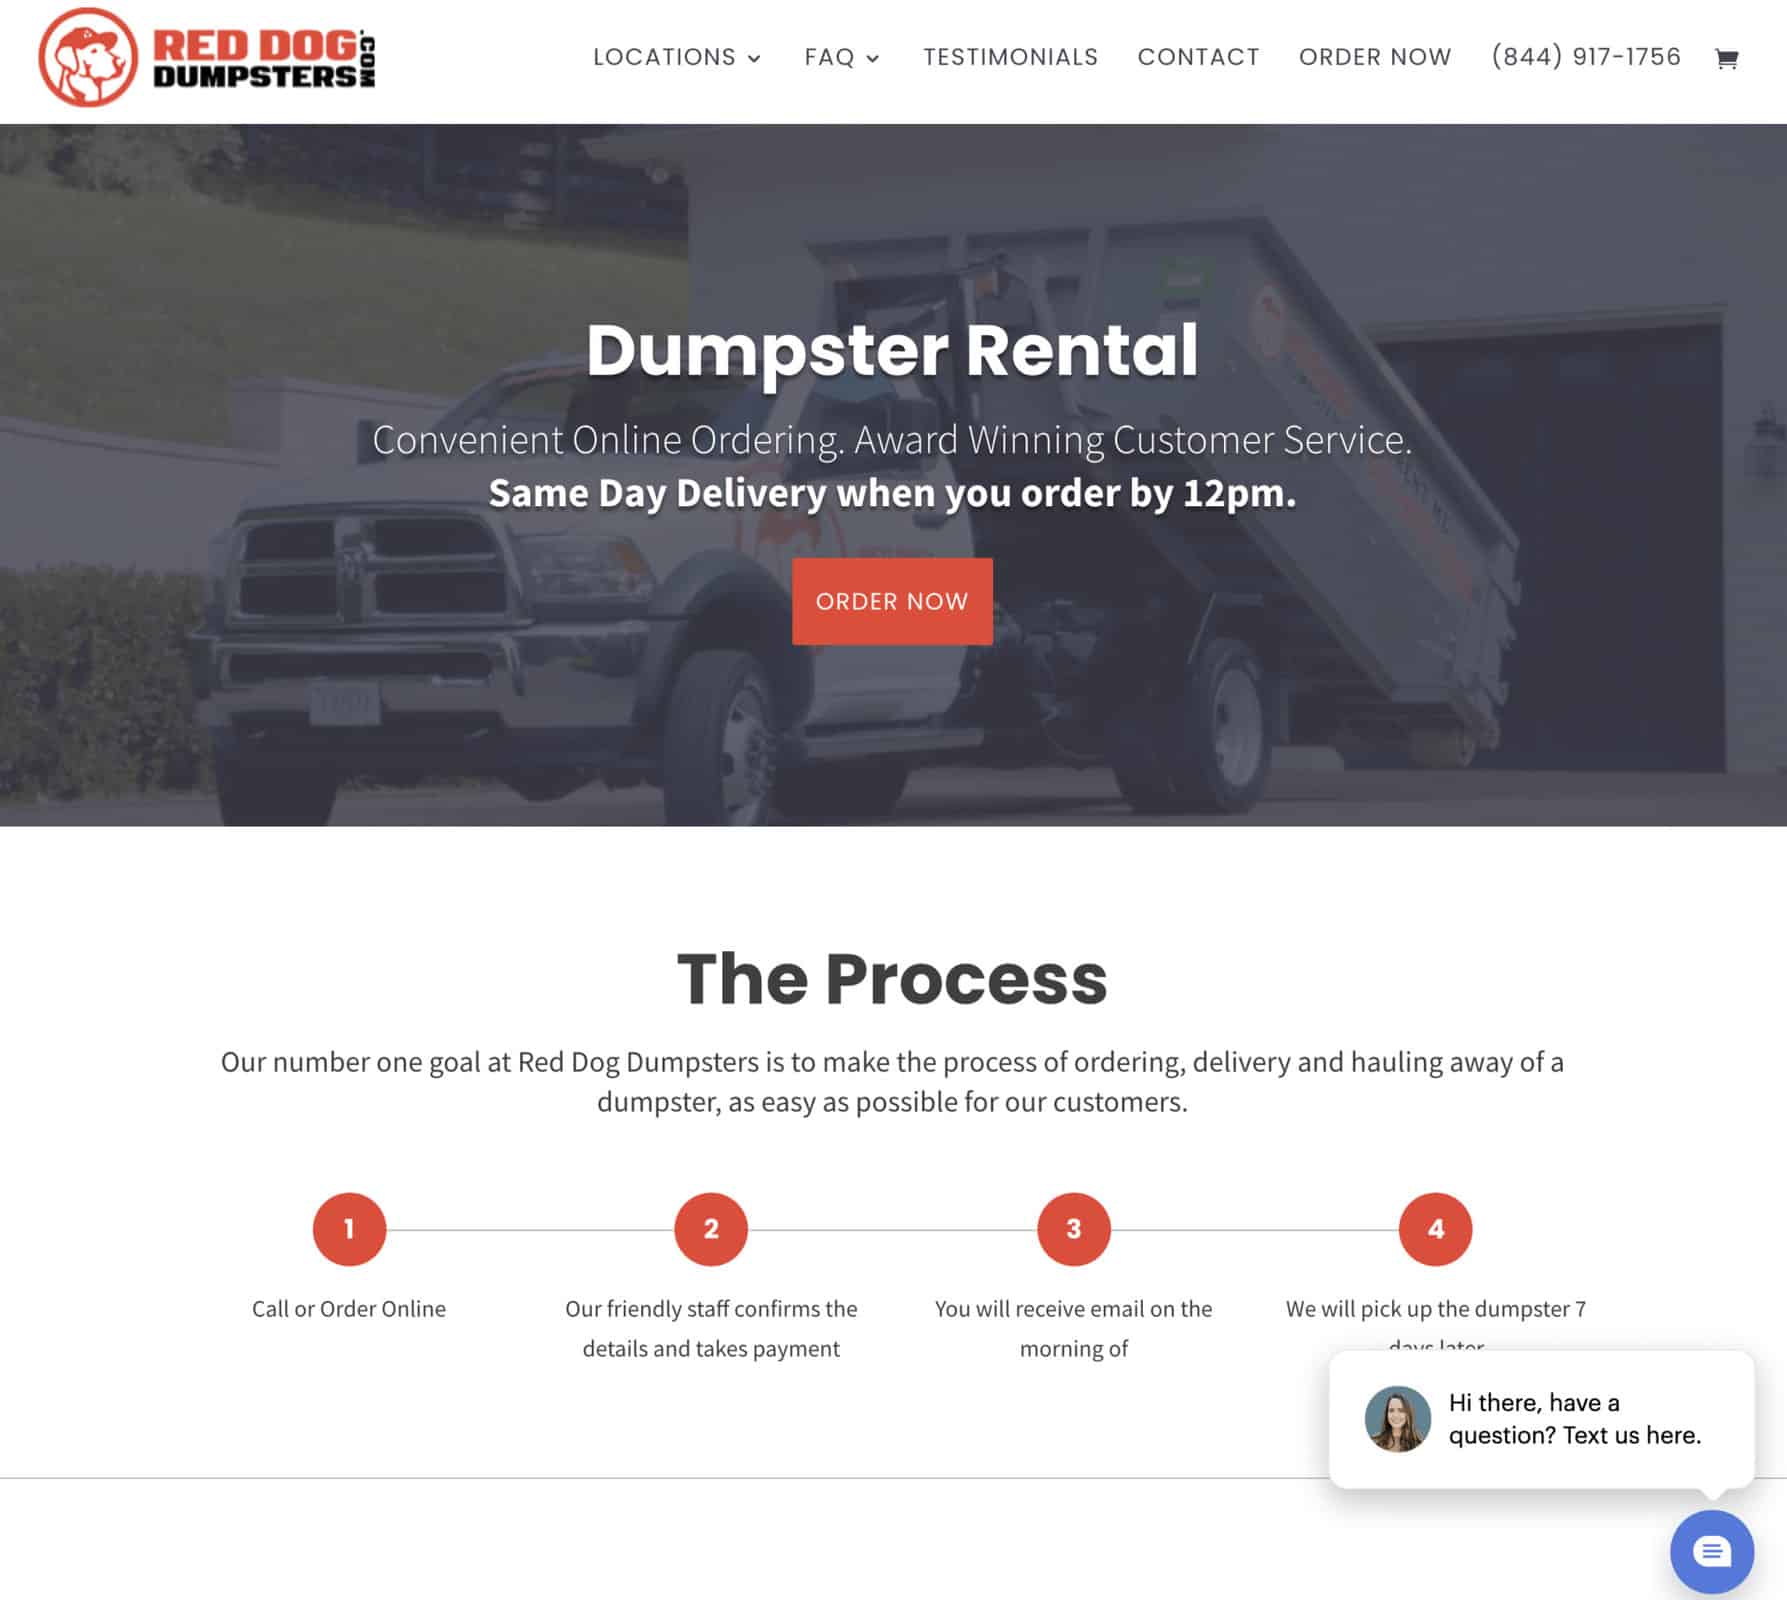 Red Dog Dumpsters: Website 